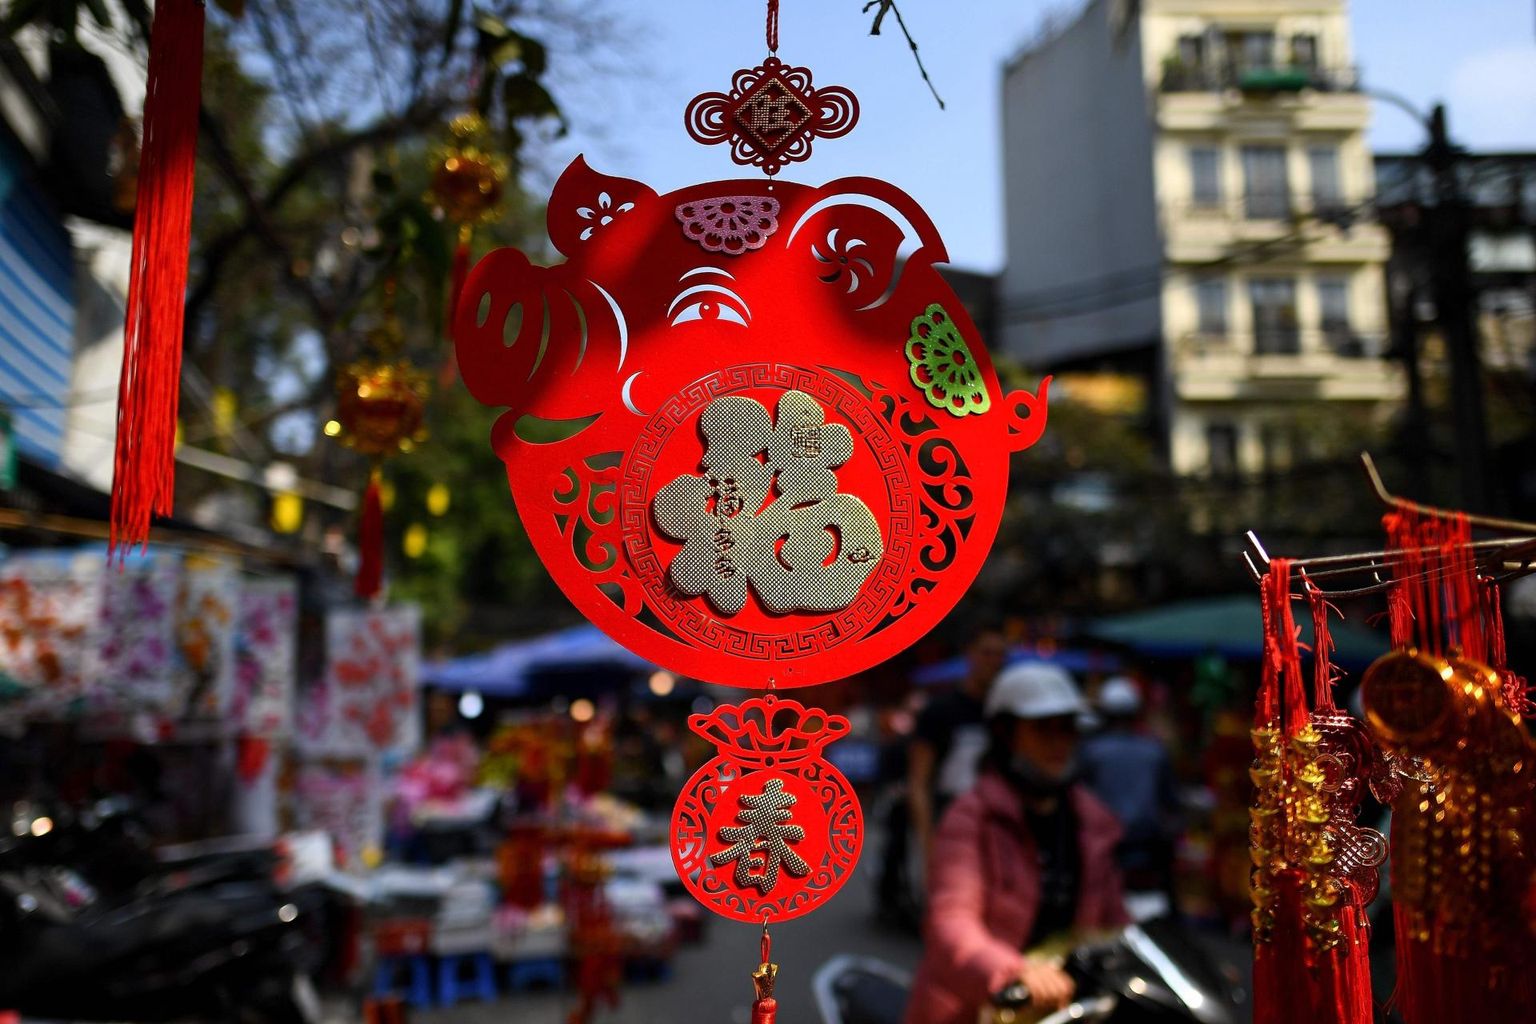 Sea-aastale pühendatud dekoratsioon Hanoi poekese ees.